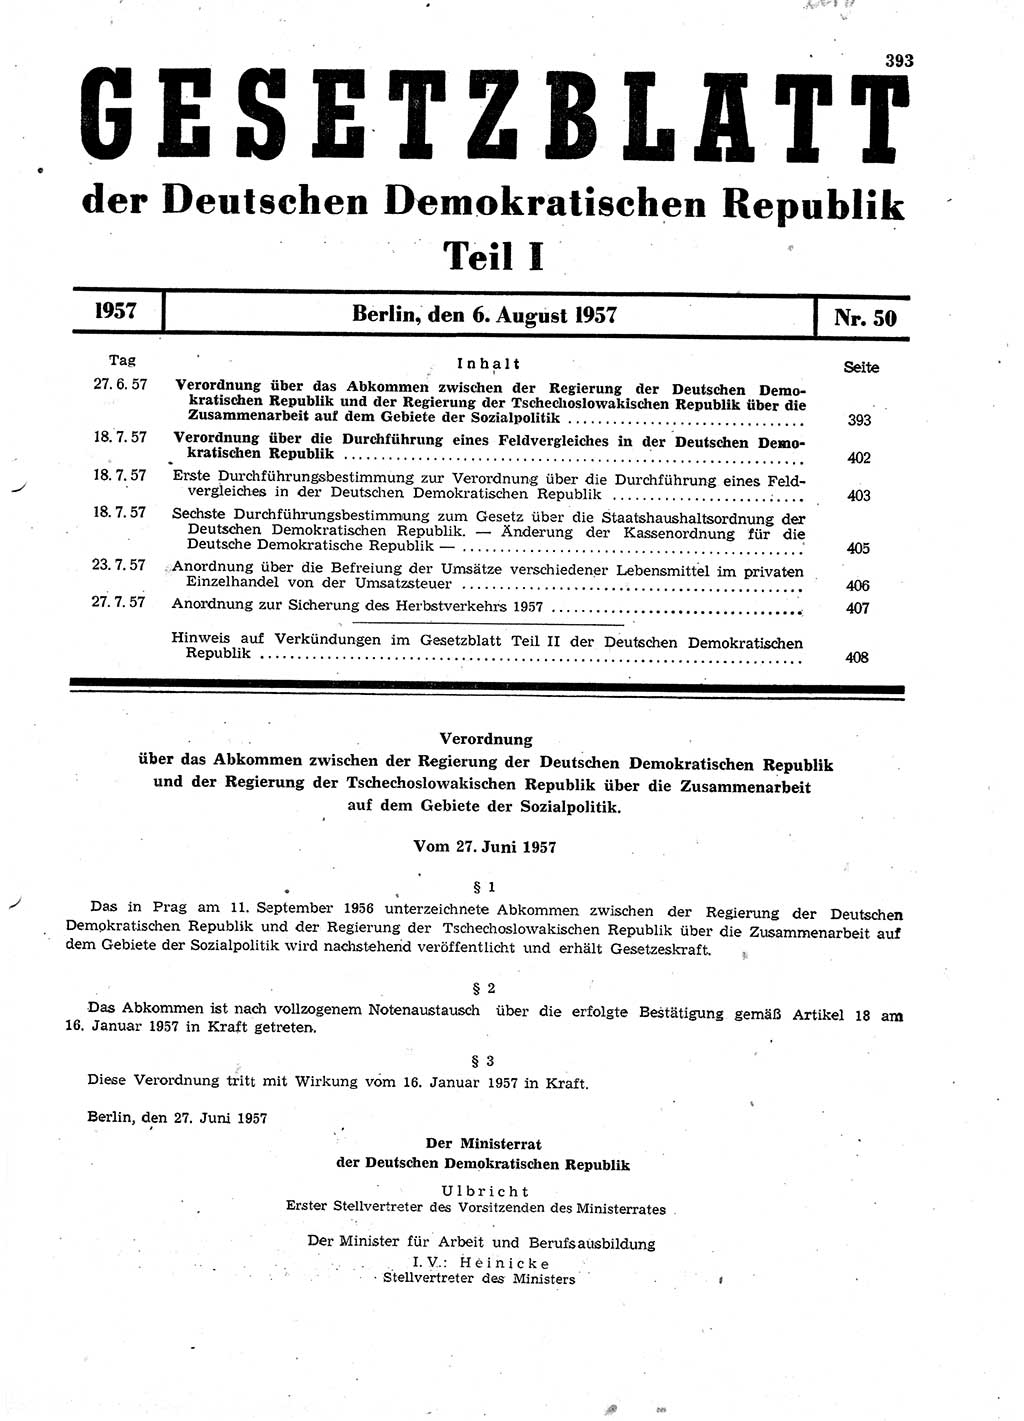 Gesetzblatt (GBl.) der Deutschen Demokratischen Republik (DDR) Teil Ⅰ 1957, Seite 393 (GBl. DDR Ⅰ 1957, S. 393)